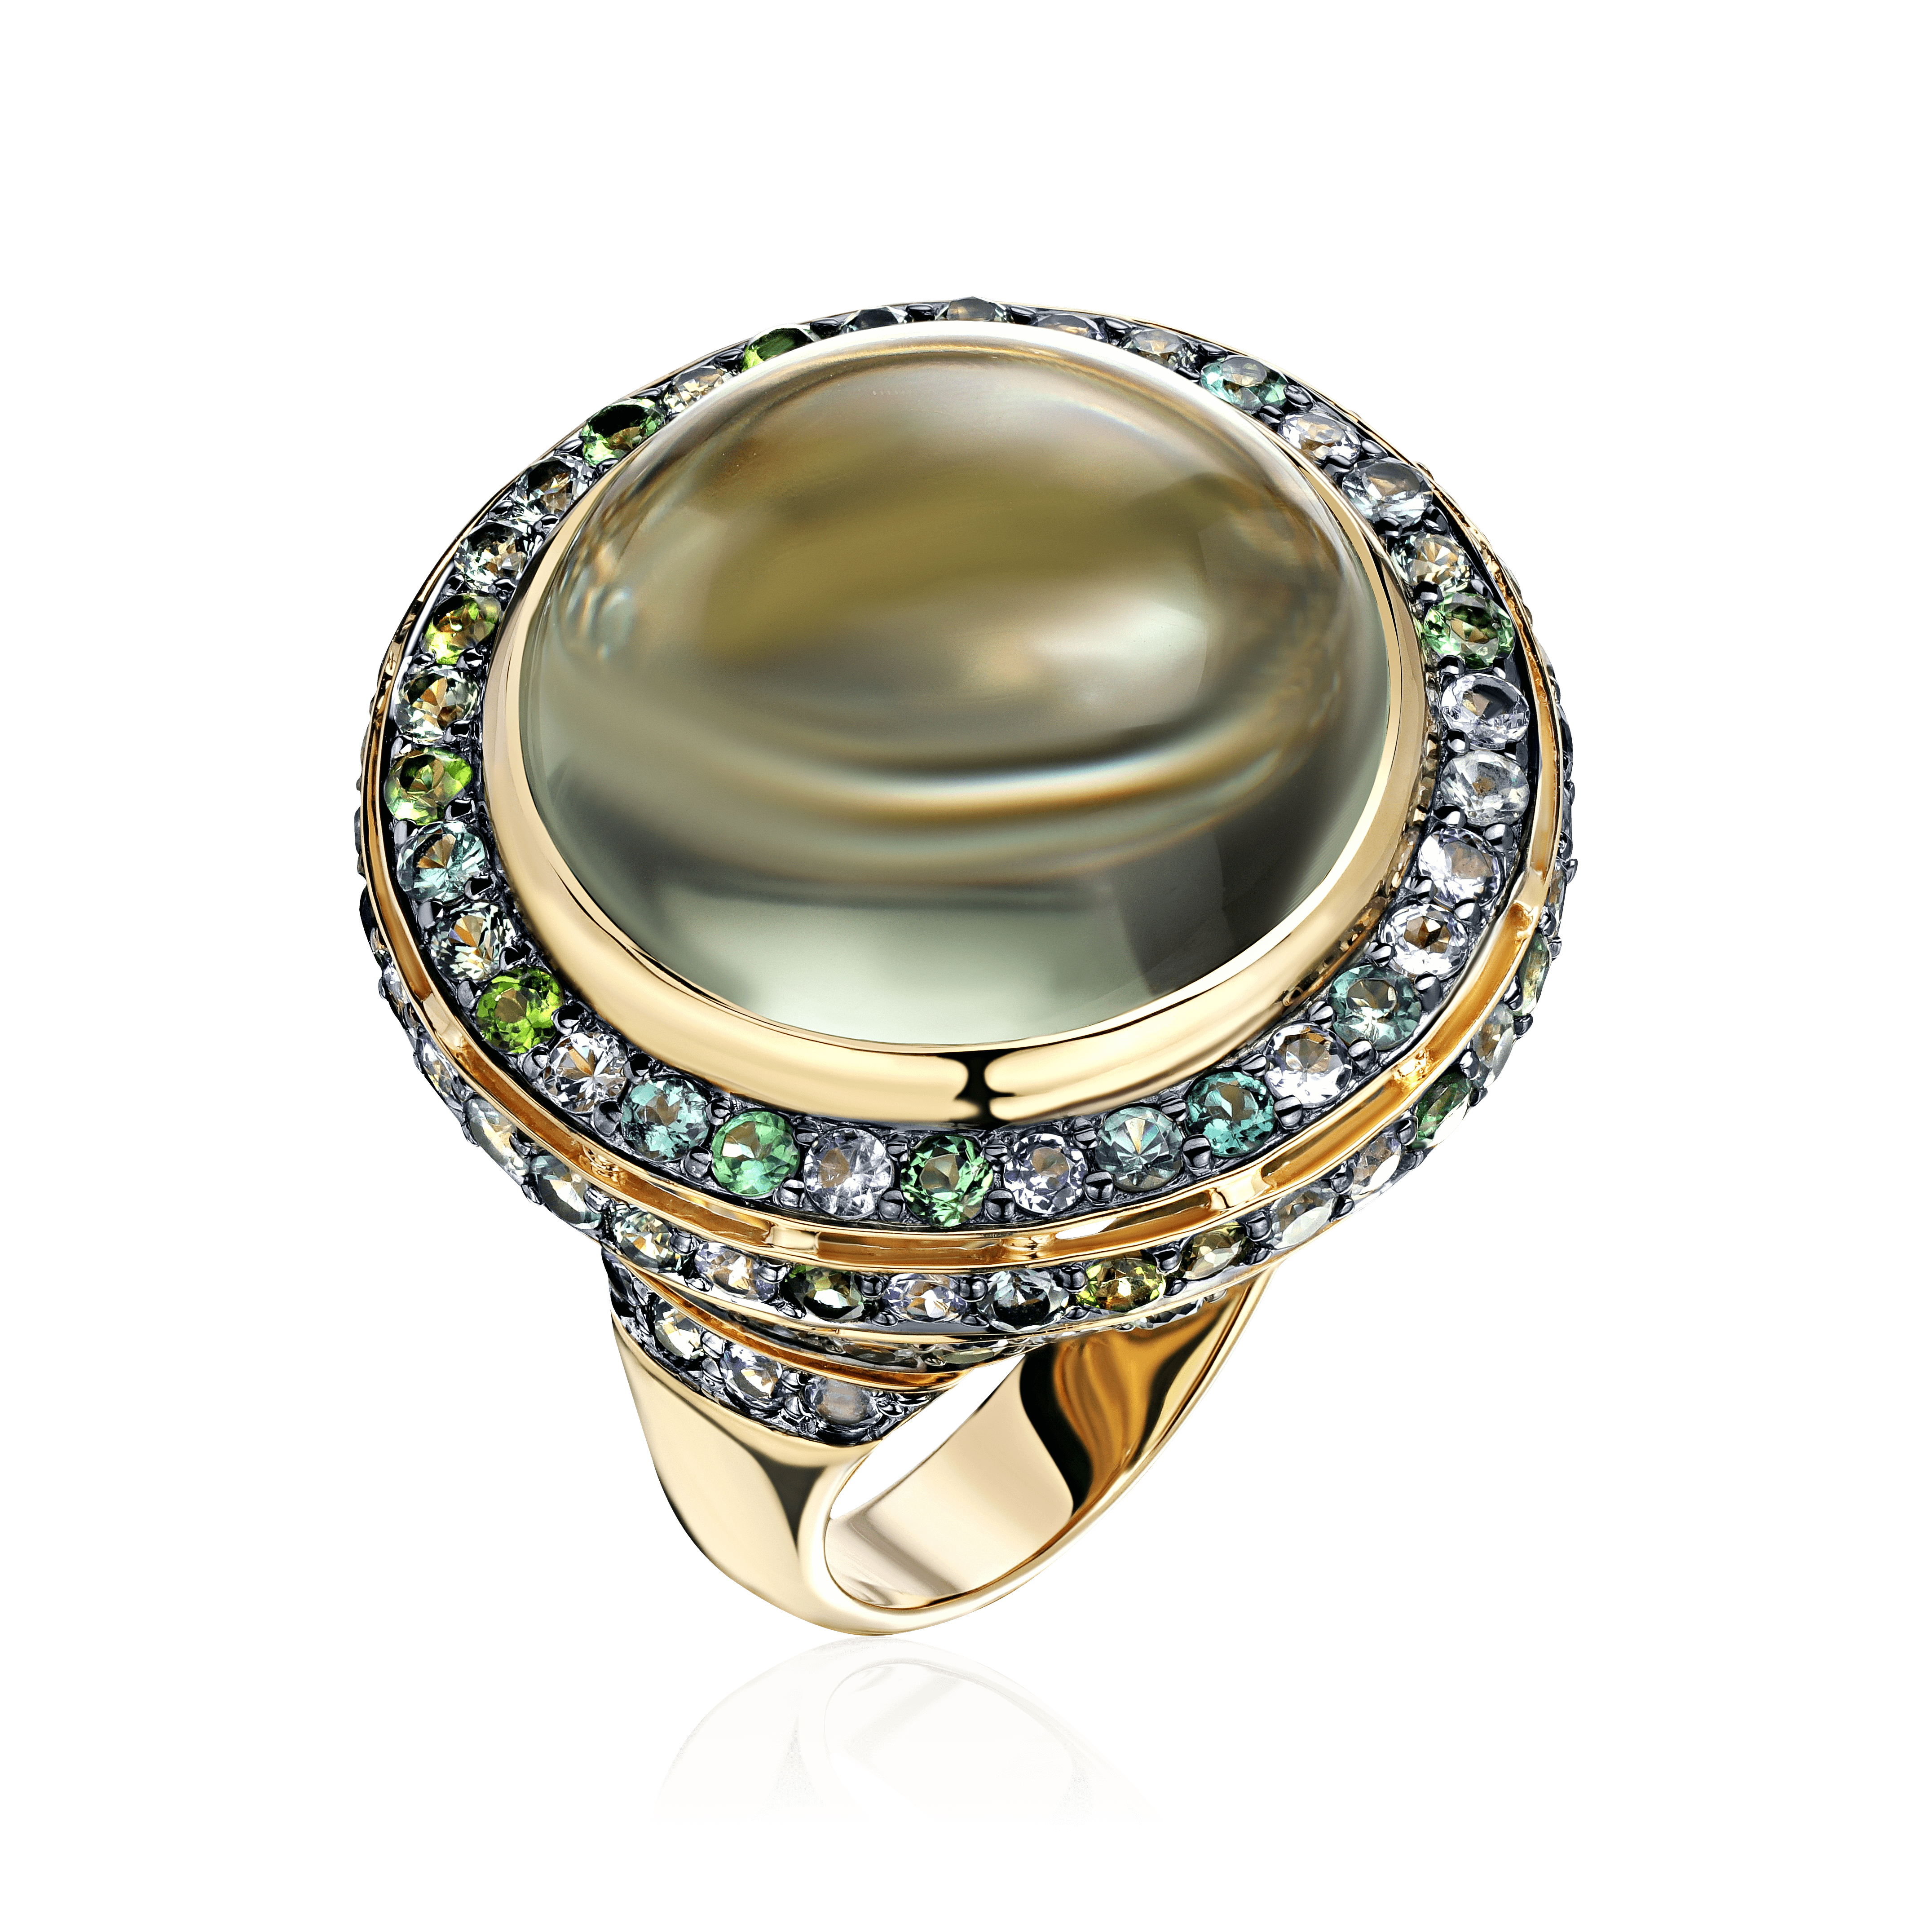 Кольцо с танзанитом, сапфиром, турмалином, бриллиантами, шпинелью, празиолитом из желтого золота 585 пробы (арт. 104293)